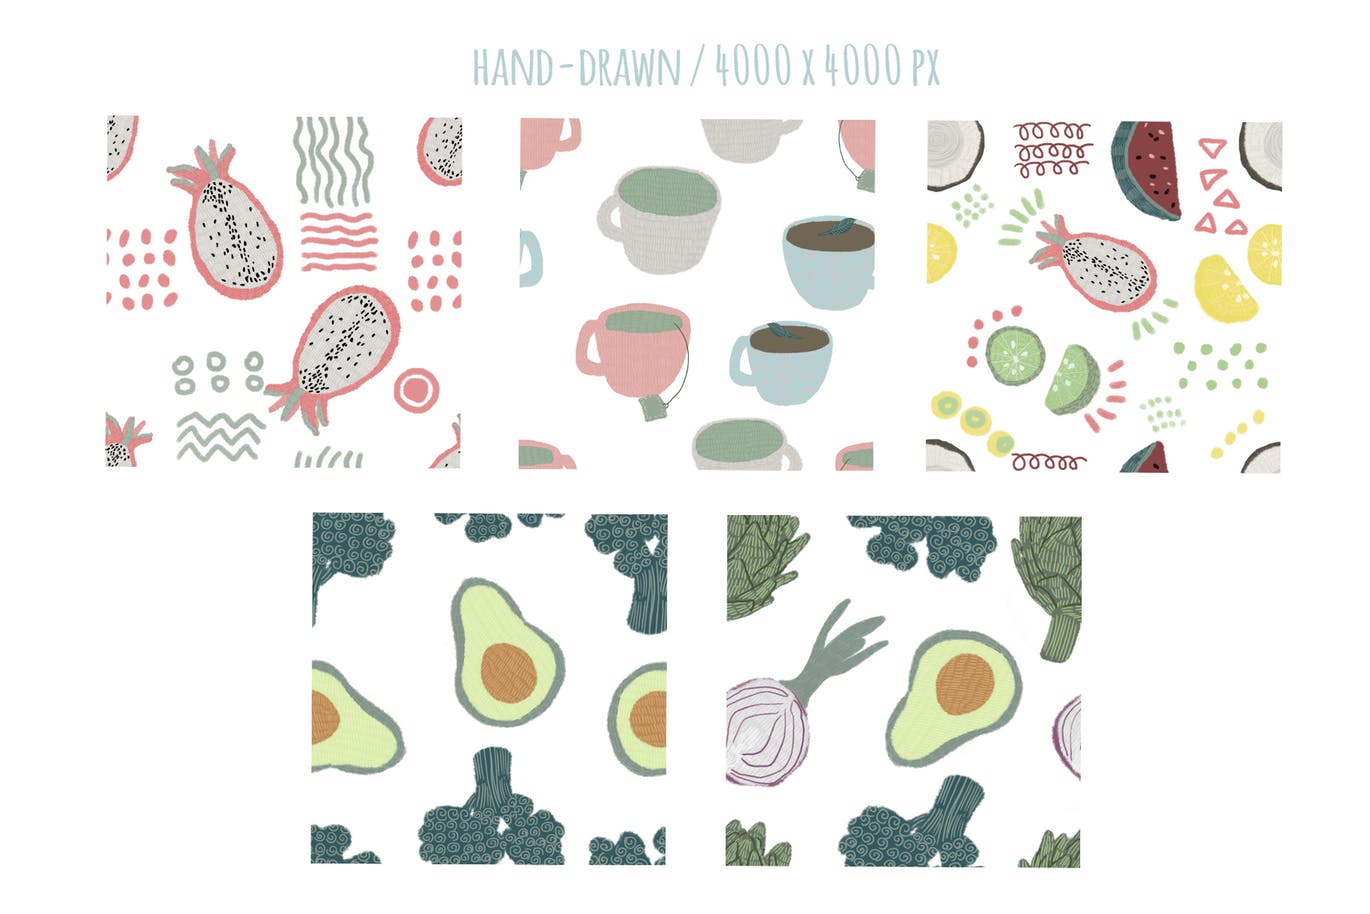 手绘食物图案食品包装图案矢量背景素材 Hand-drawn naive simple food patterns插图(1)